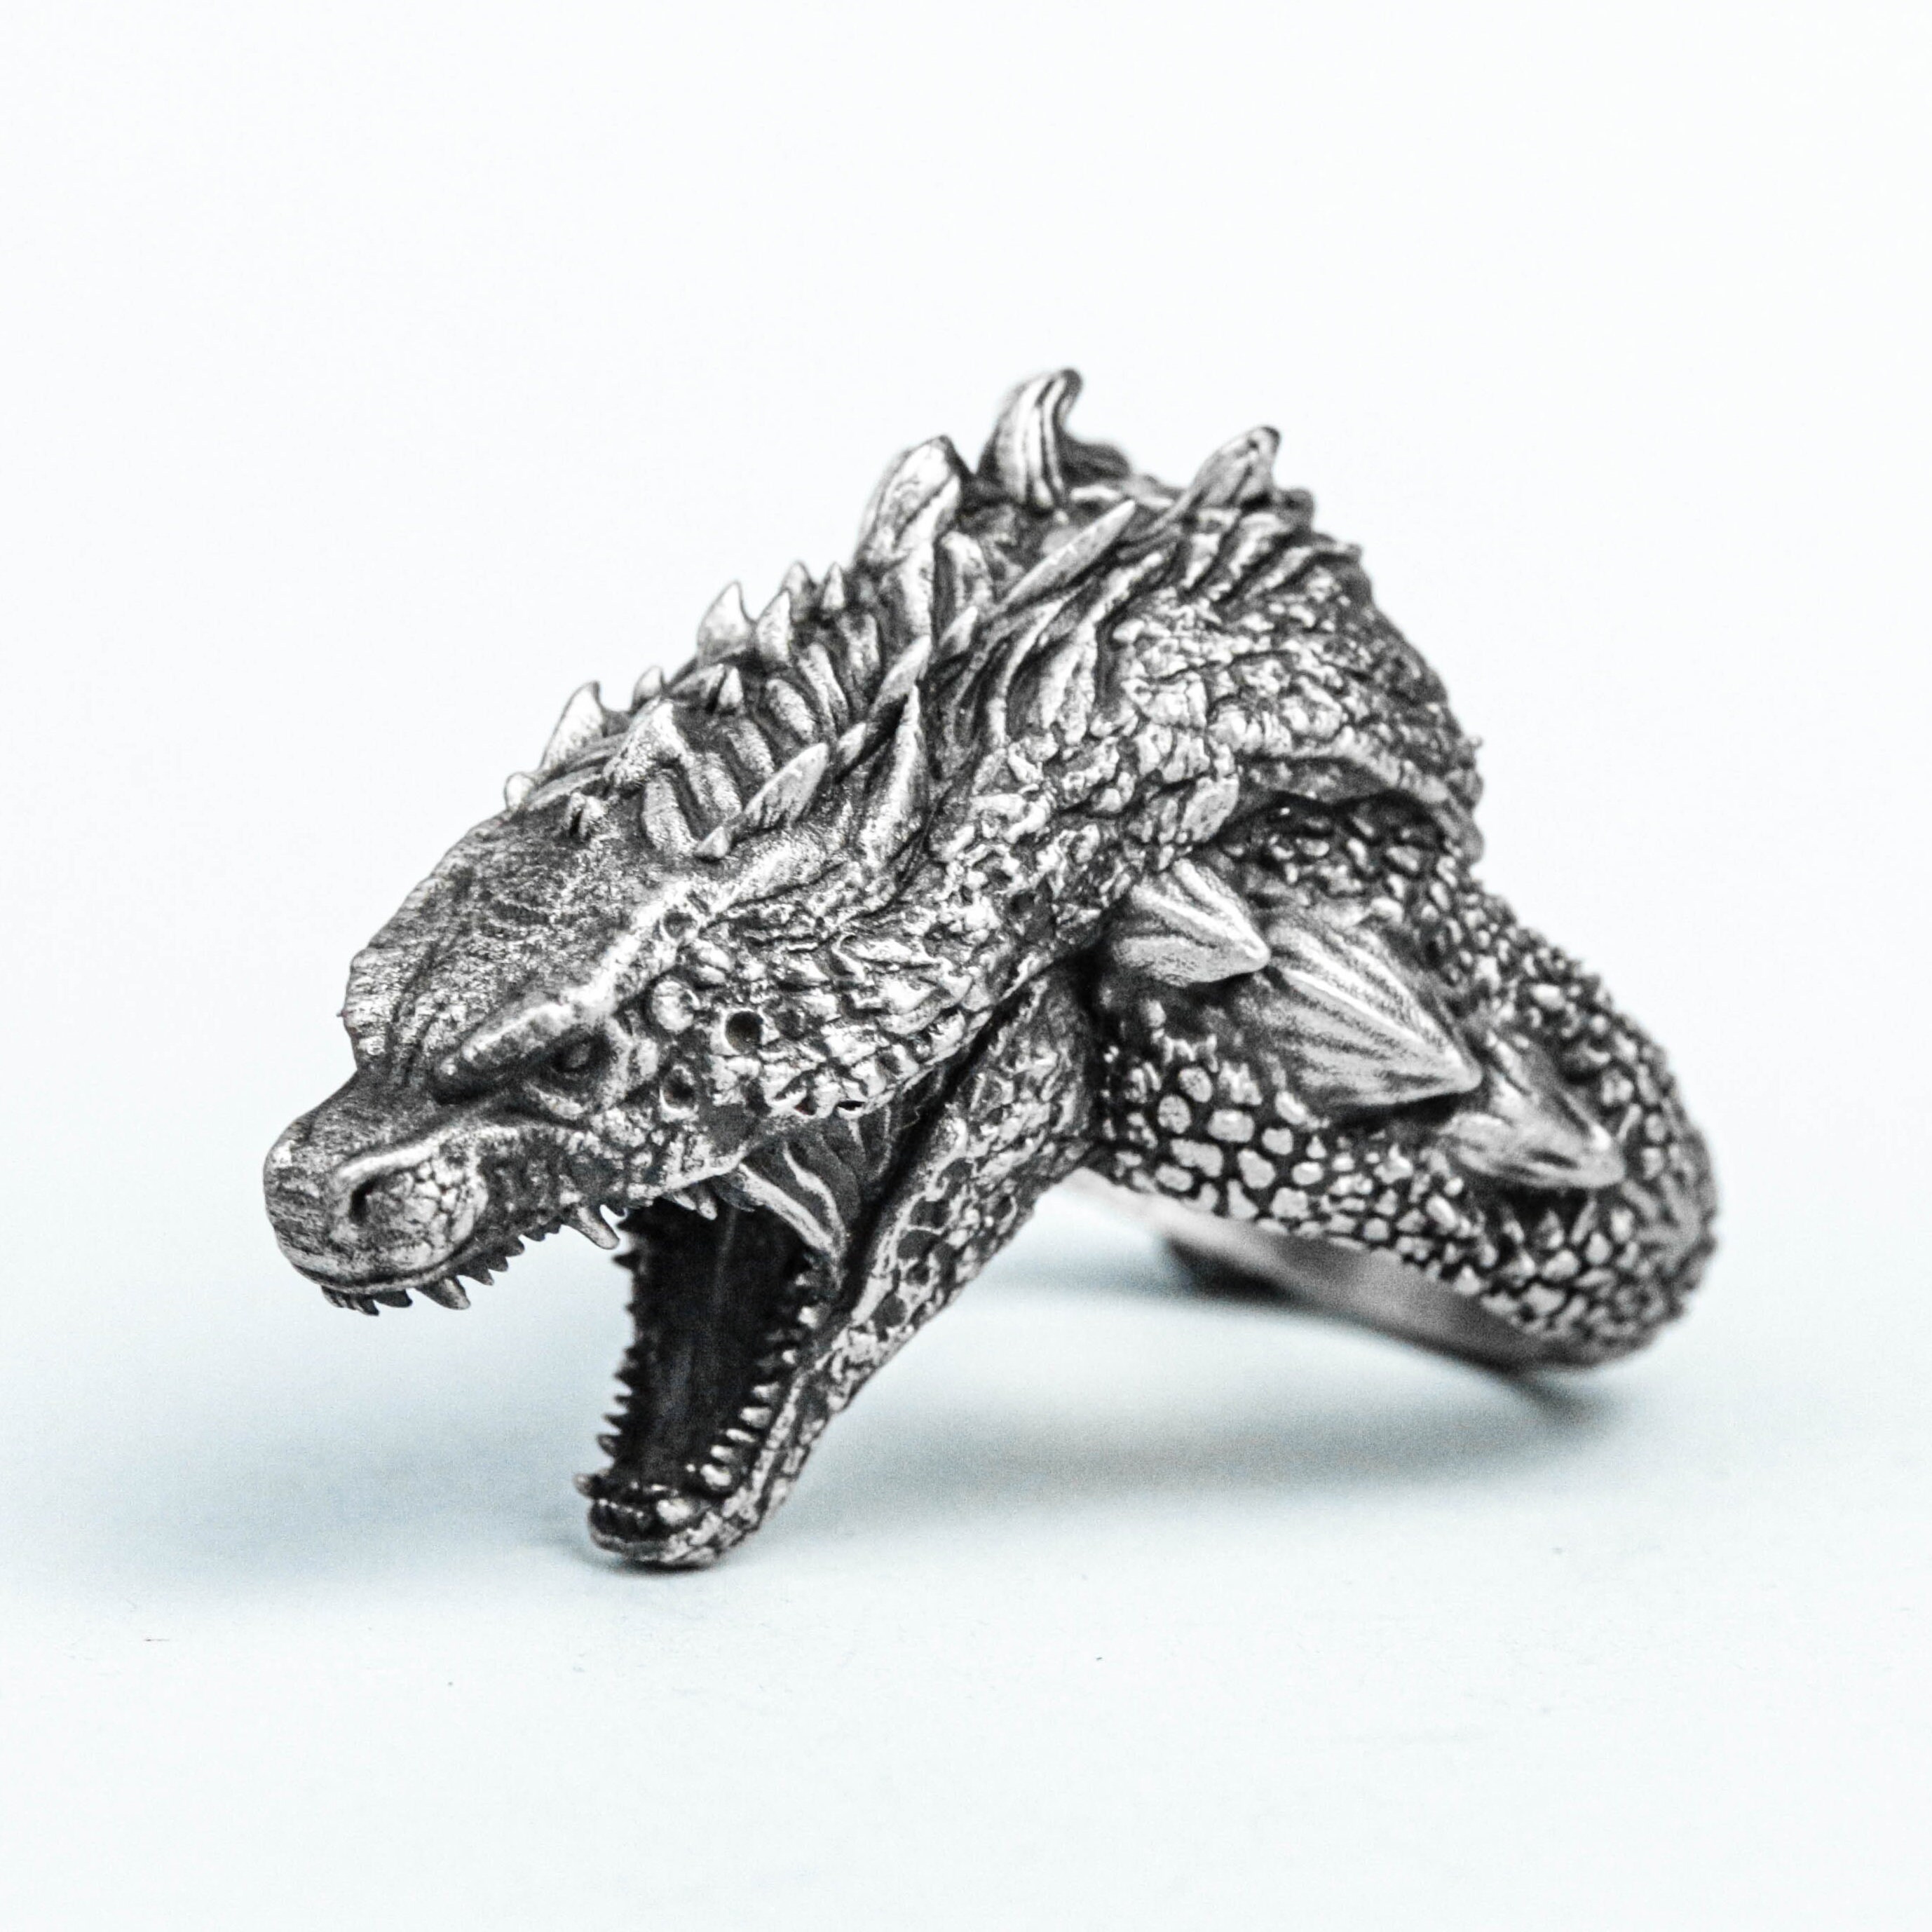 Godzilla Ring Men's Ring Textured 925 Sterling Silver - Etsy